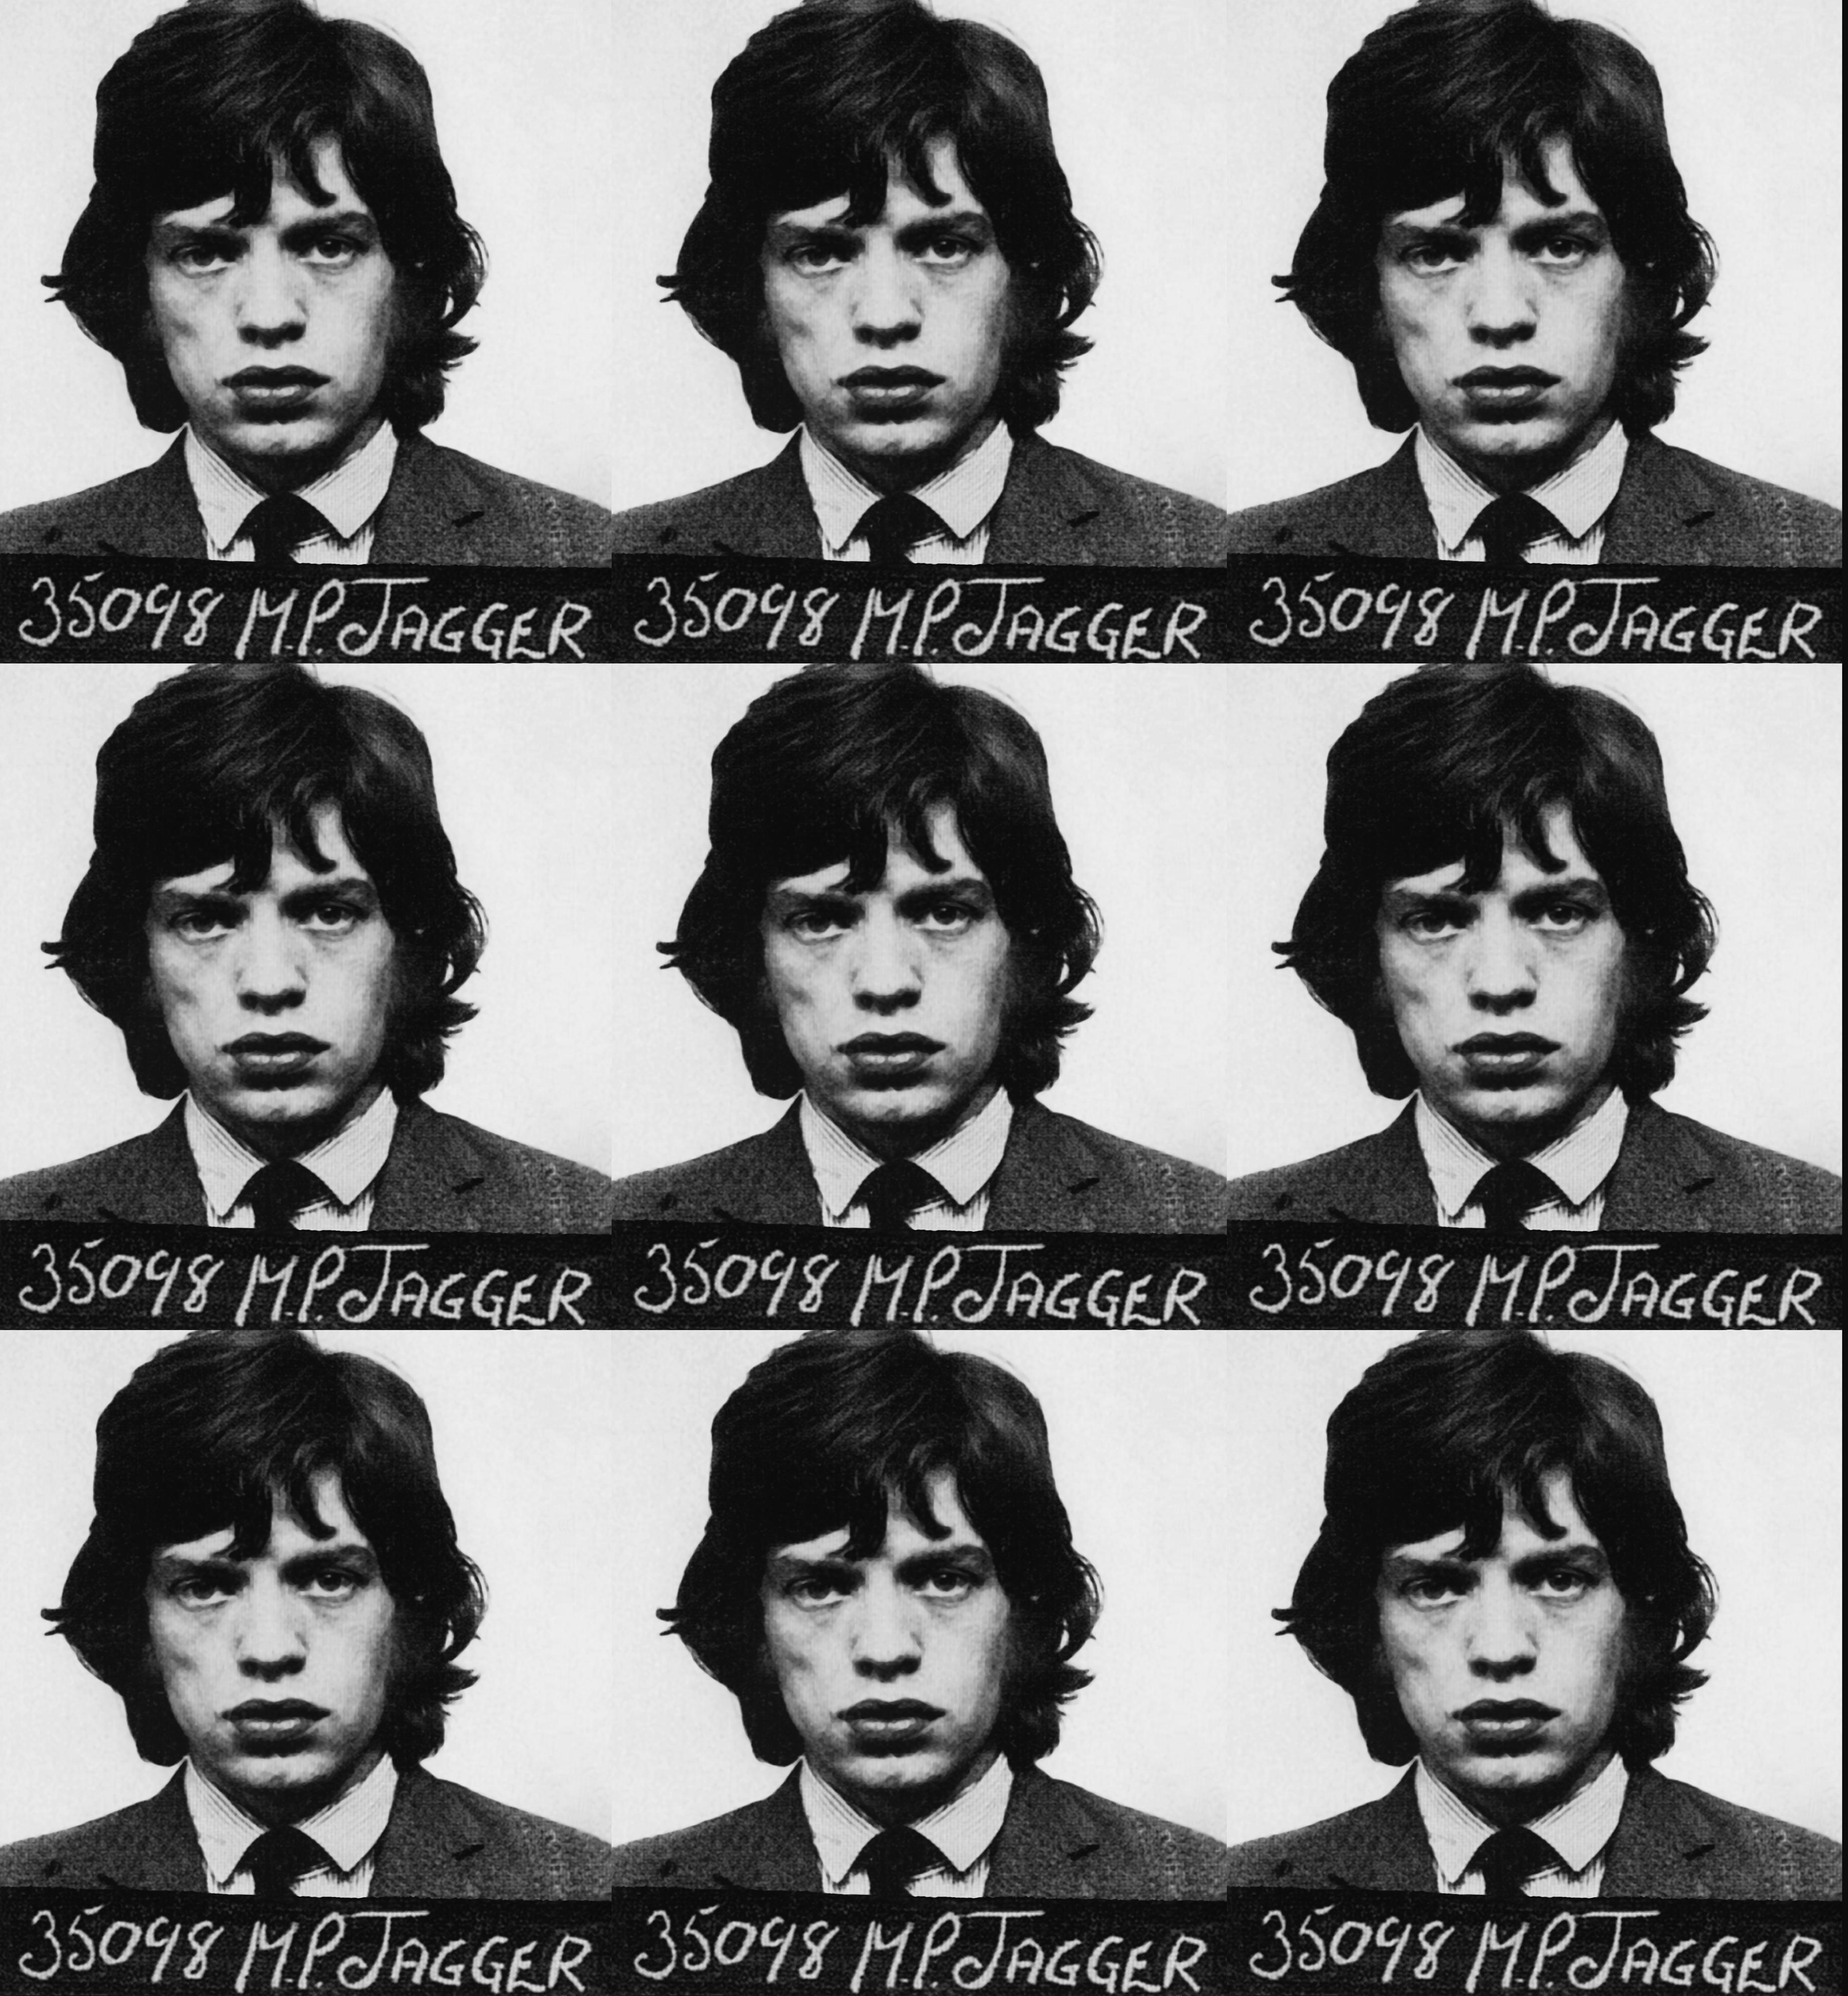 "Mick Jagger Mugshot" Impression 39 x 36 pouces Édition de 75 exemplaires par Gerard Marti

Impression numérique sur papier d'art. 
Livré roulé dans un tube. 
Signé et numéroté par l'artiste. 

Le 12 février 1967, à la suite d'une dénonciation